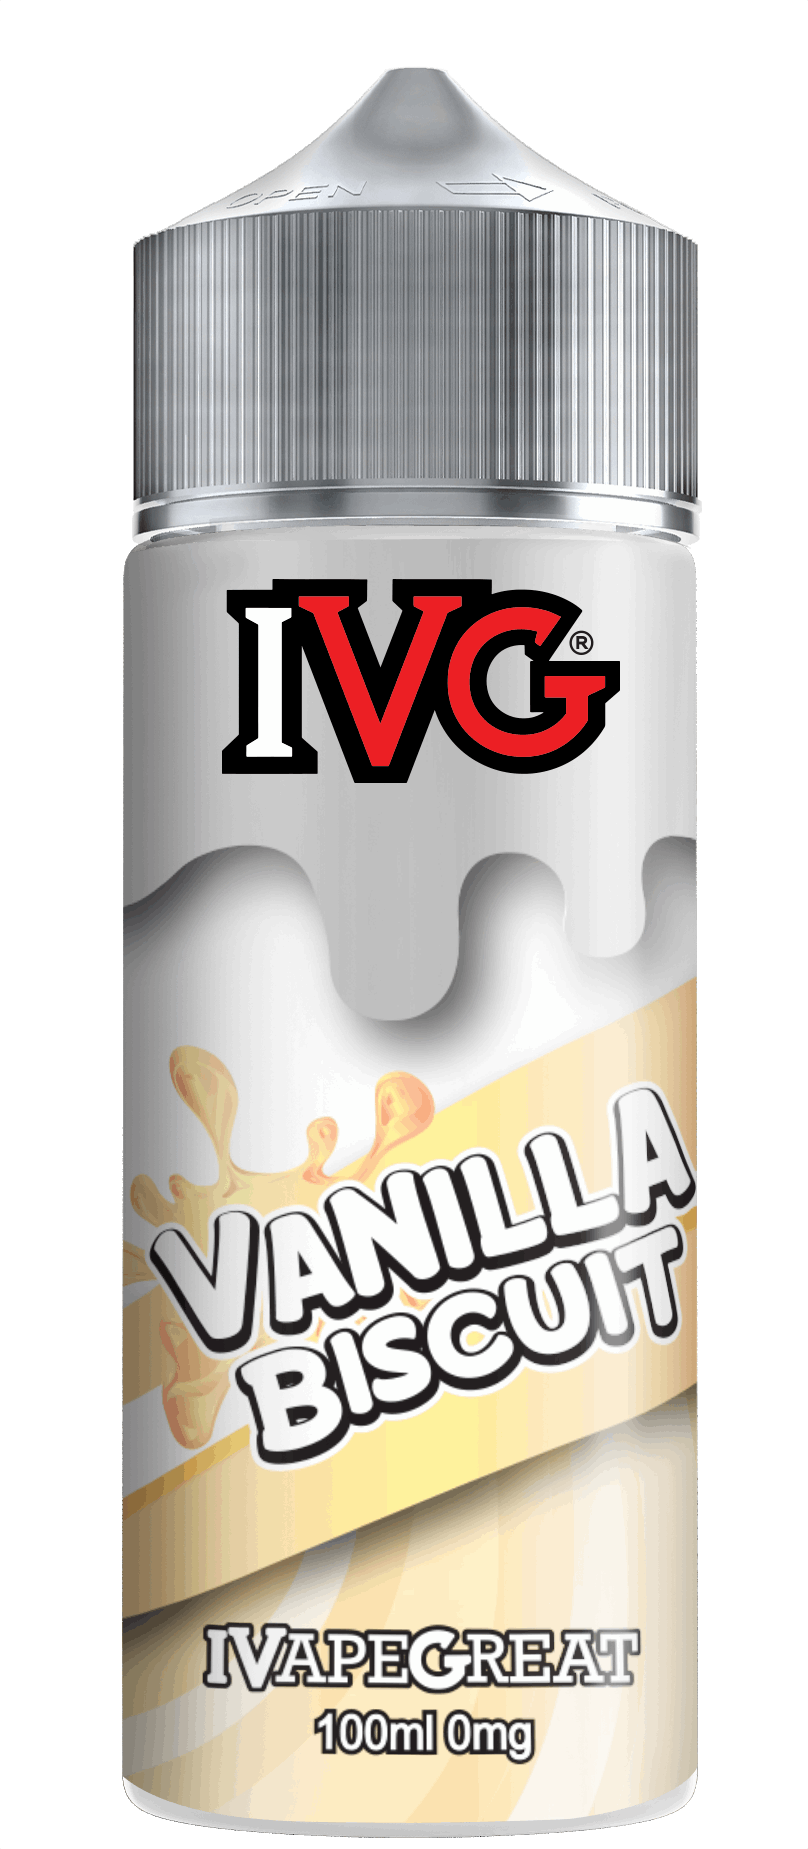 IVG Vanilla Biscuit